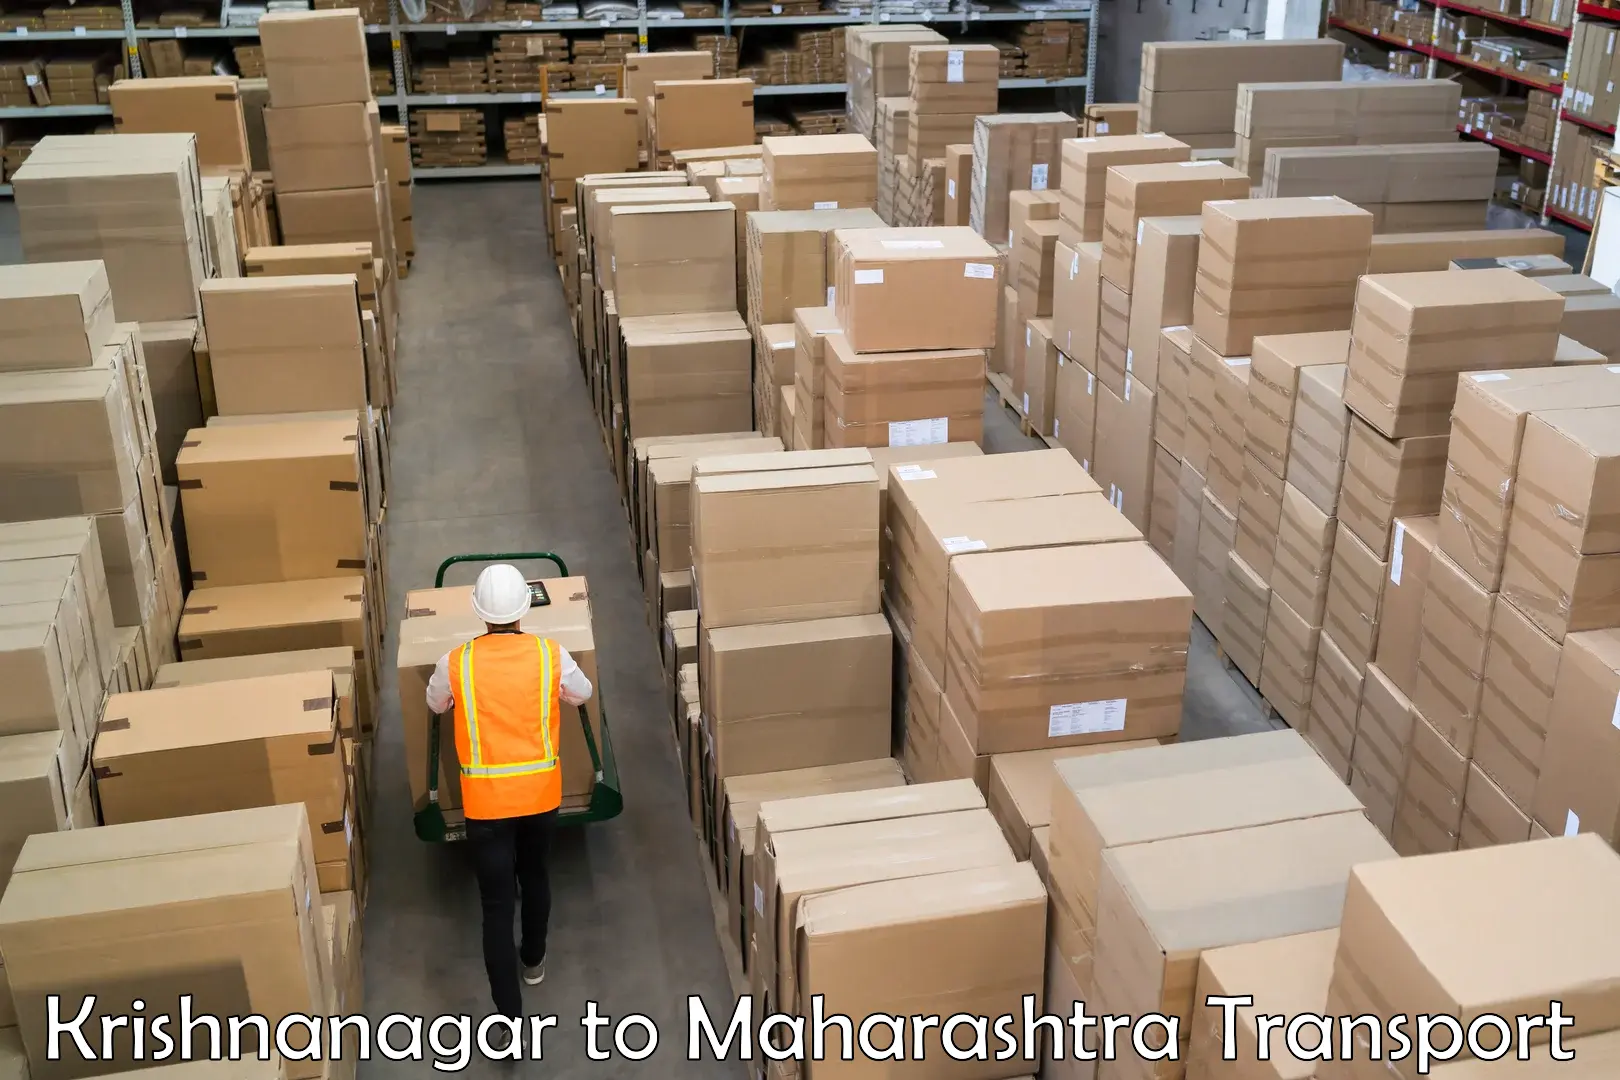 Shipping partner Krishnanagar to Bhoom